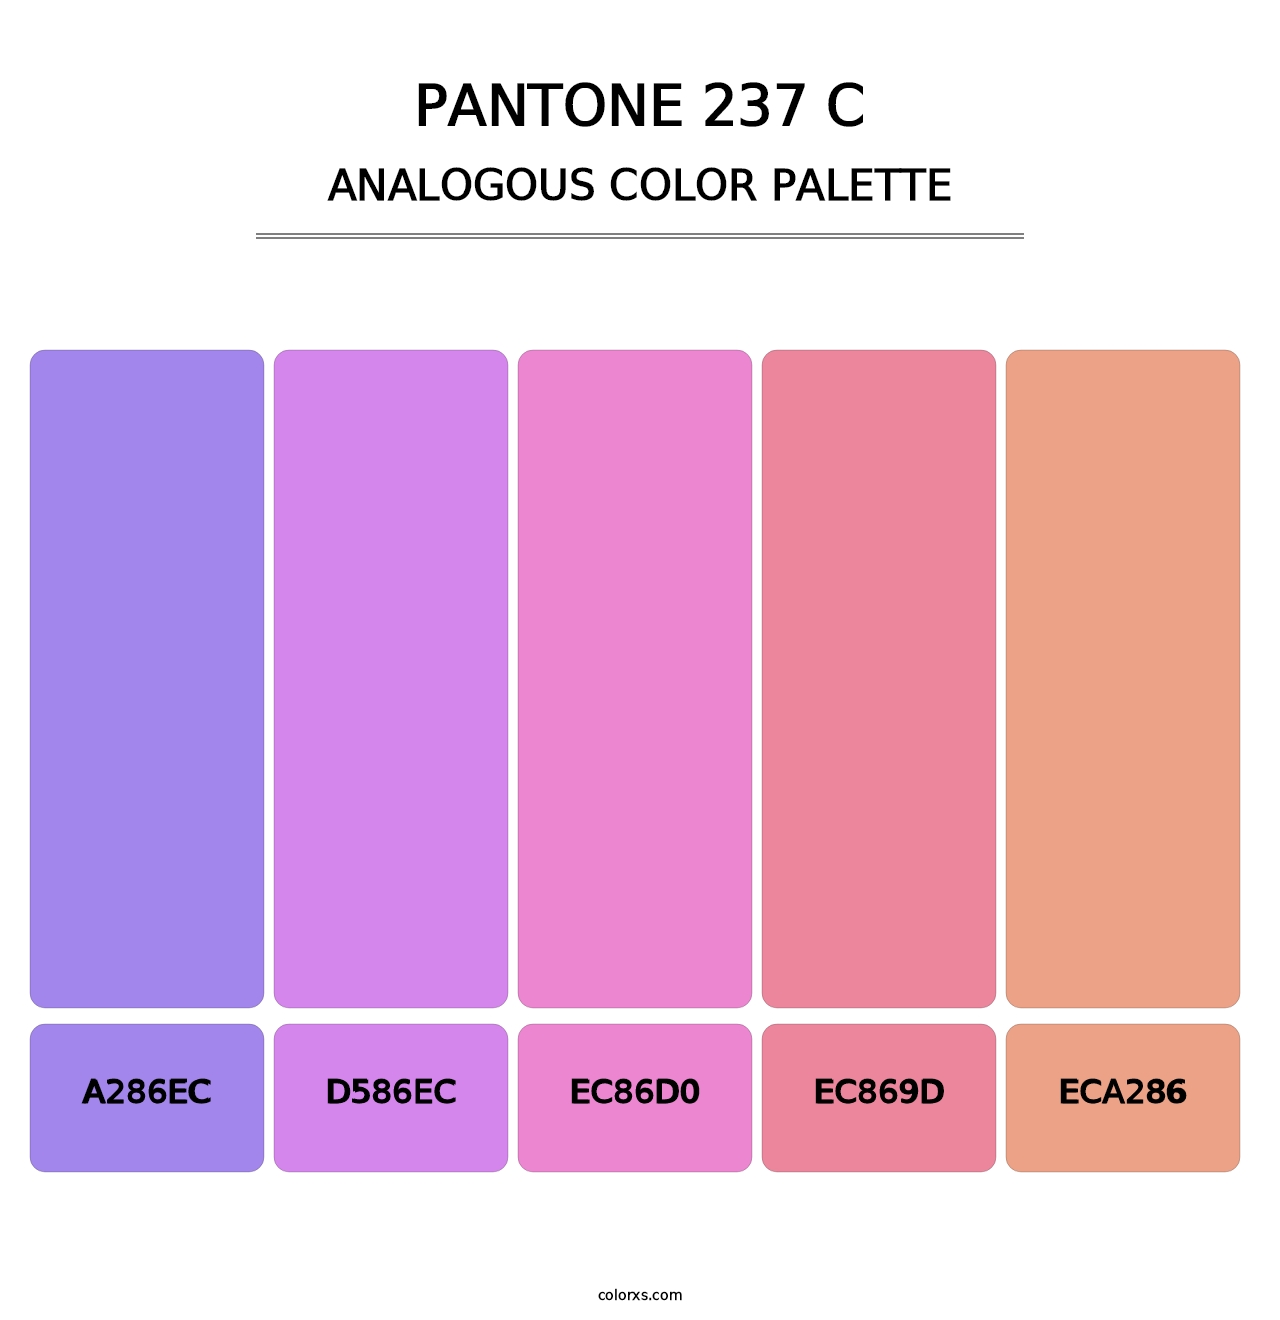 PANTONE 237 C - Analogous Color Palette